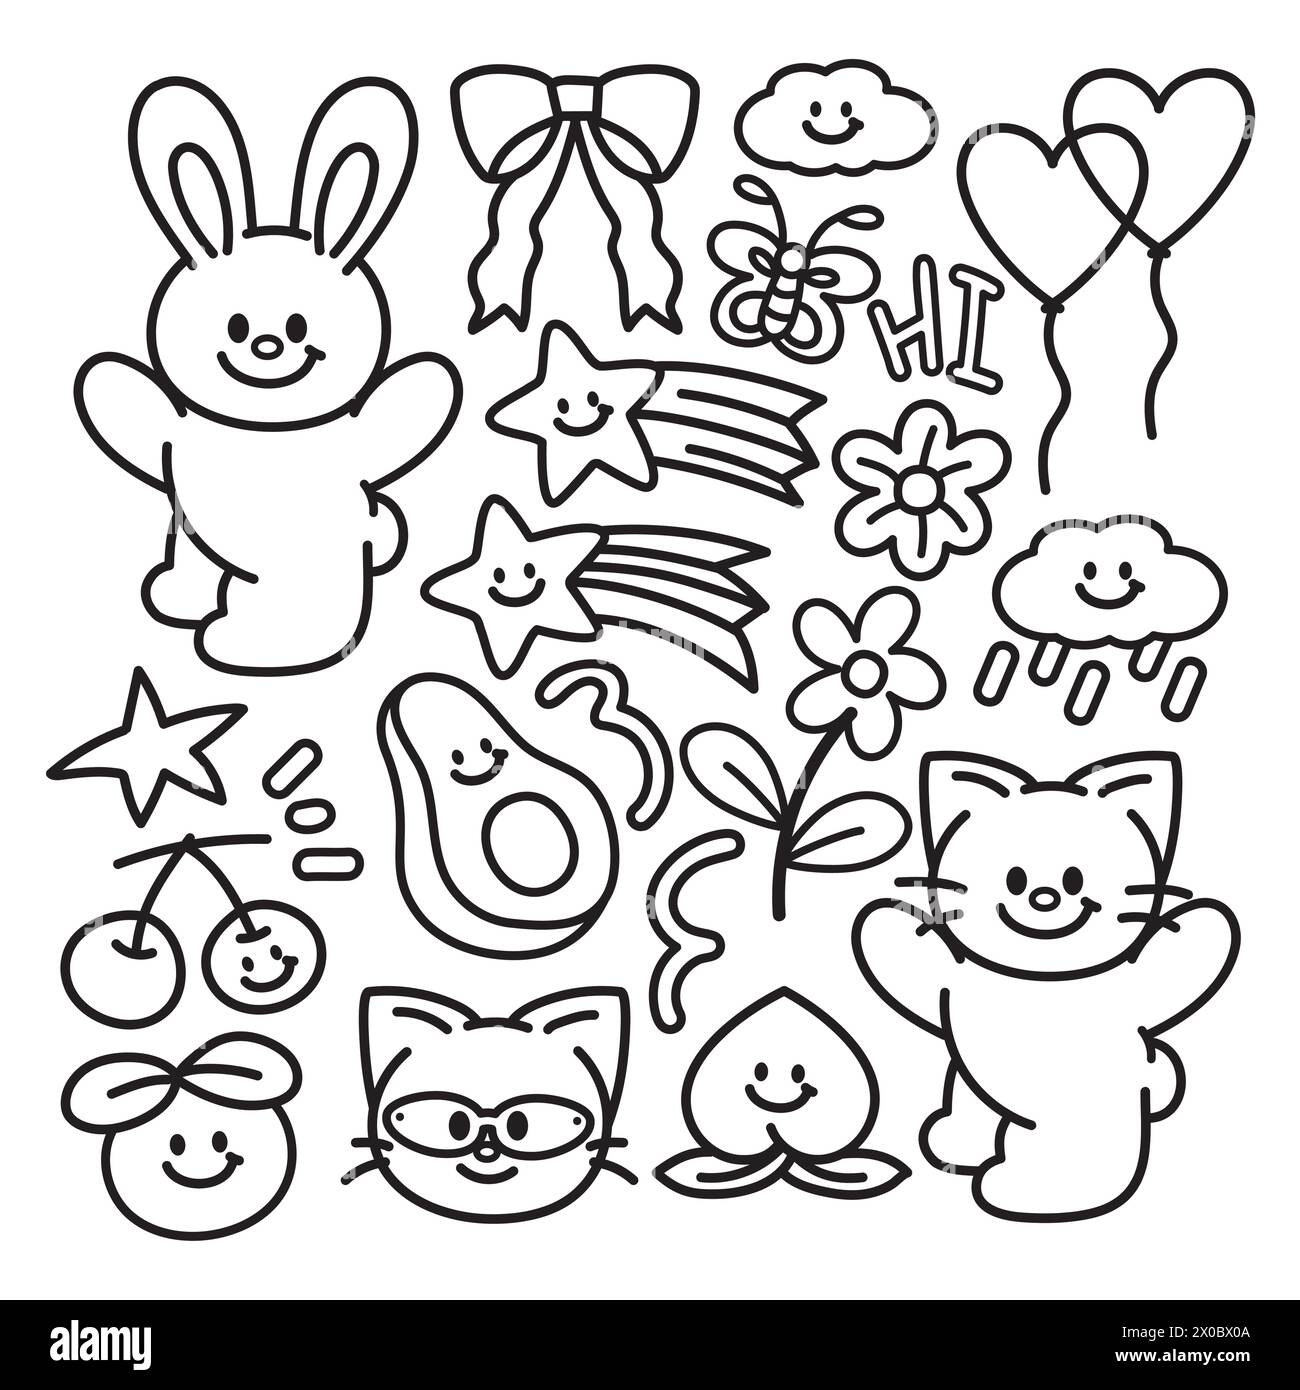 Contorni neri di coniglio rosa, farfalla, gatto, ciliegia, avocado, arancia, pesca, nastro rosa, nuvola, pioggia, fiori, stella cadente per libro da colorare per bambini Illustrazione Vettoriale